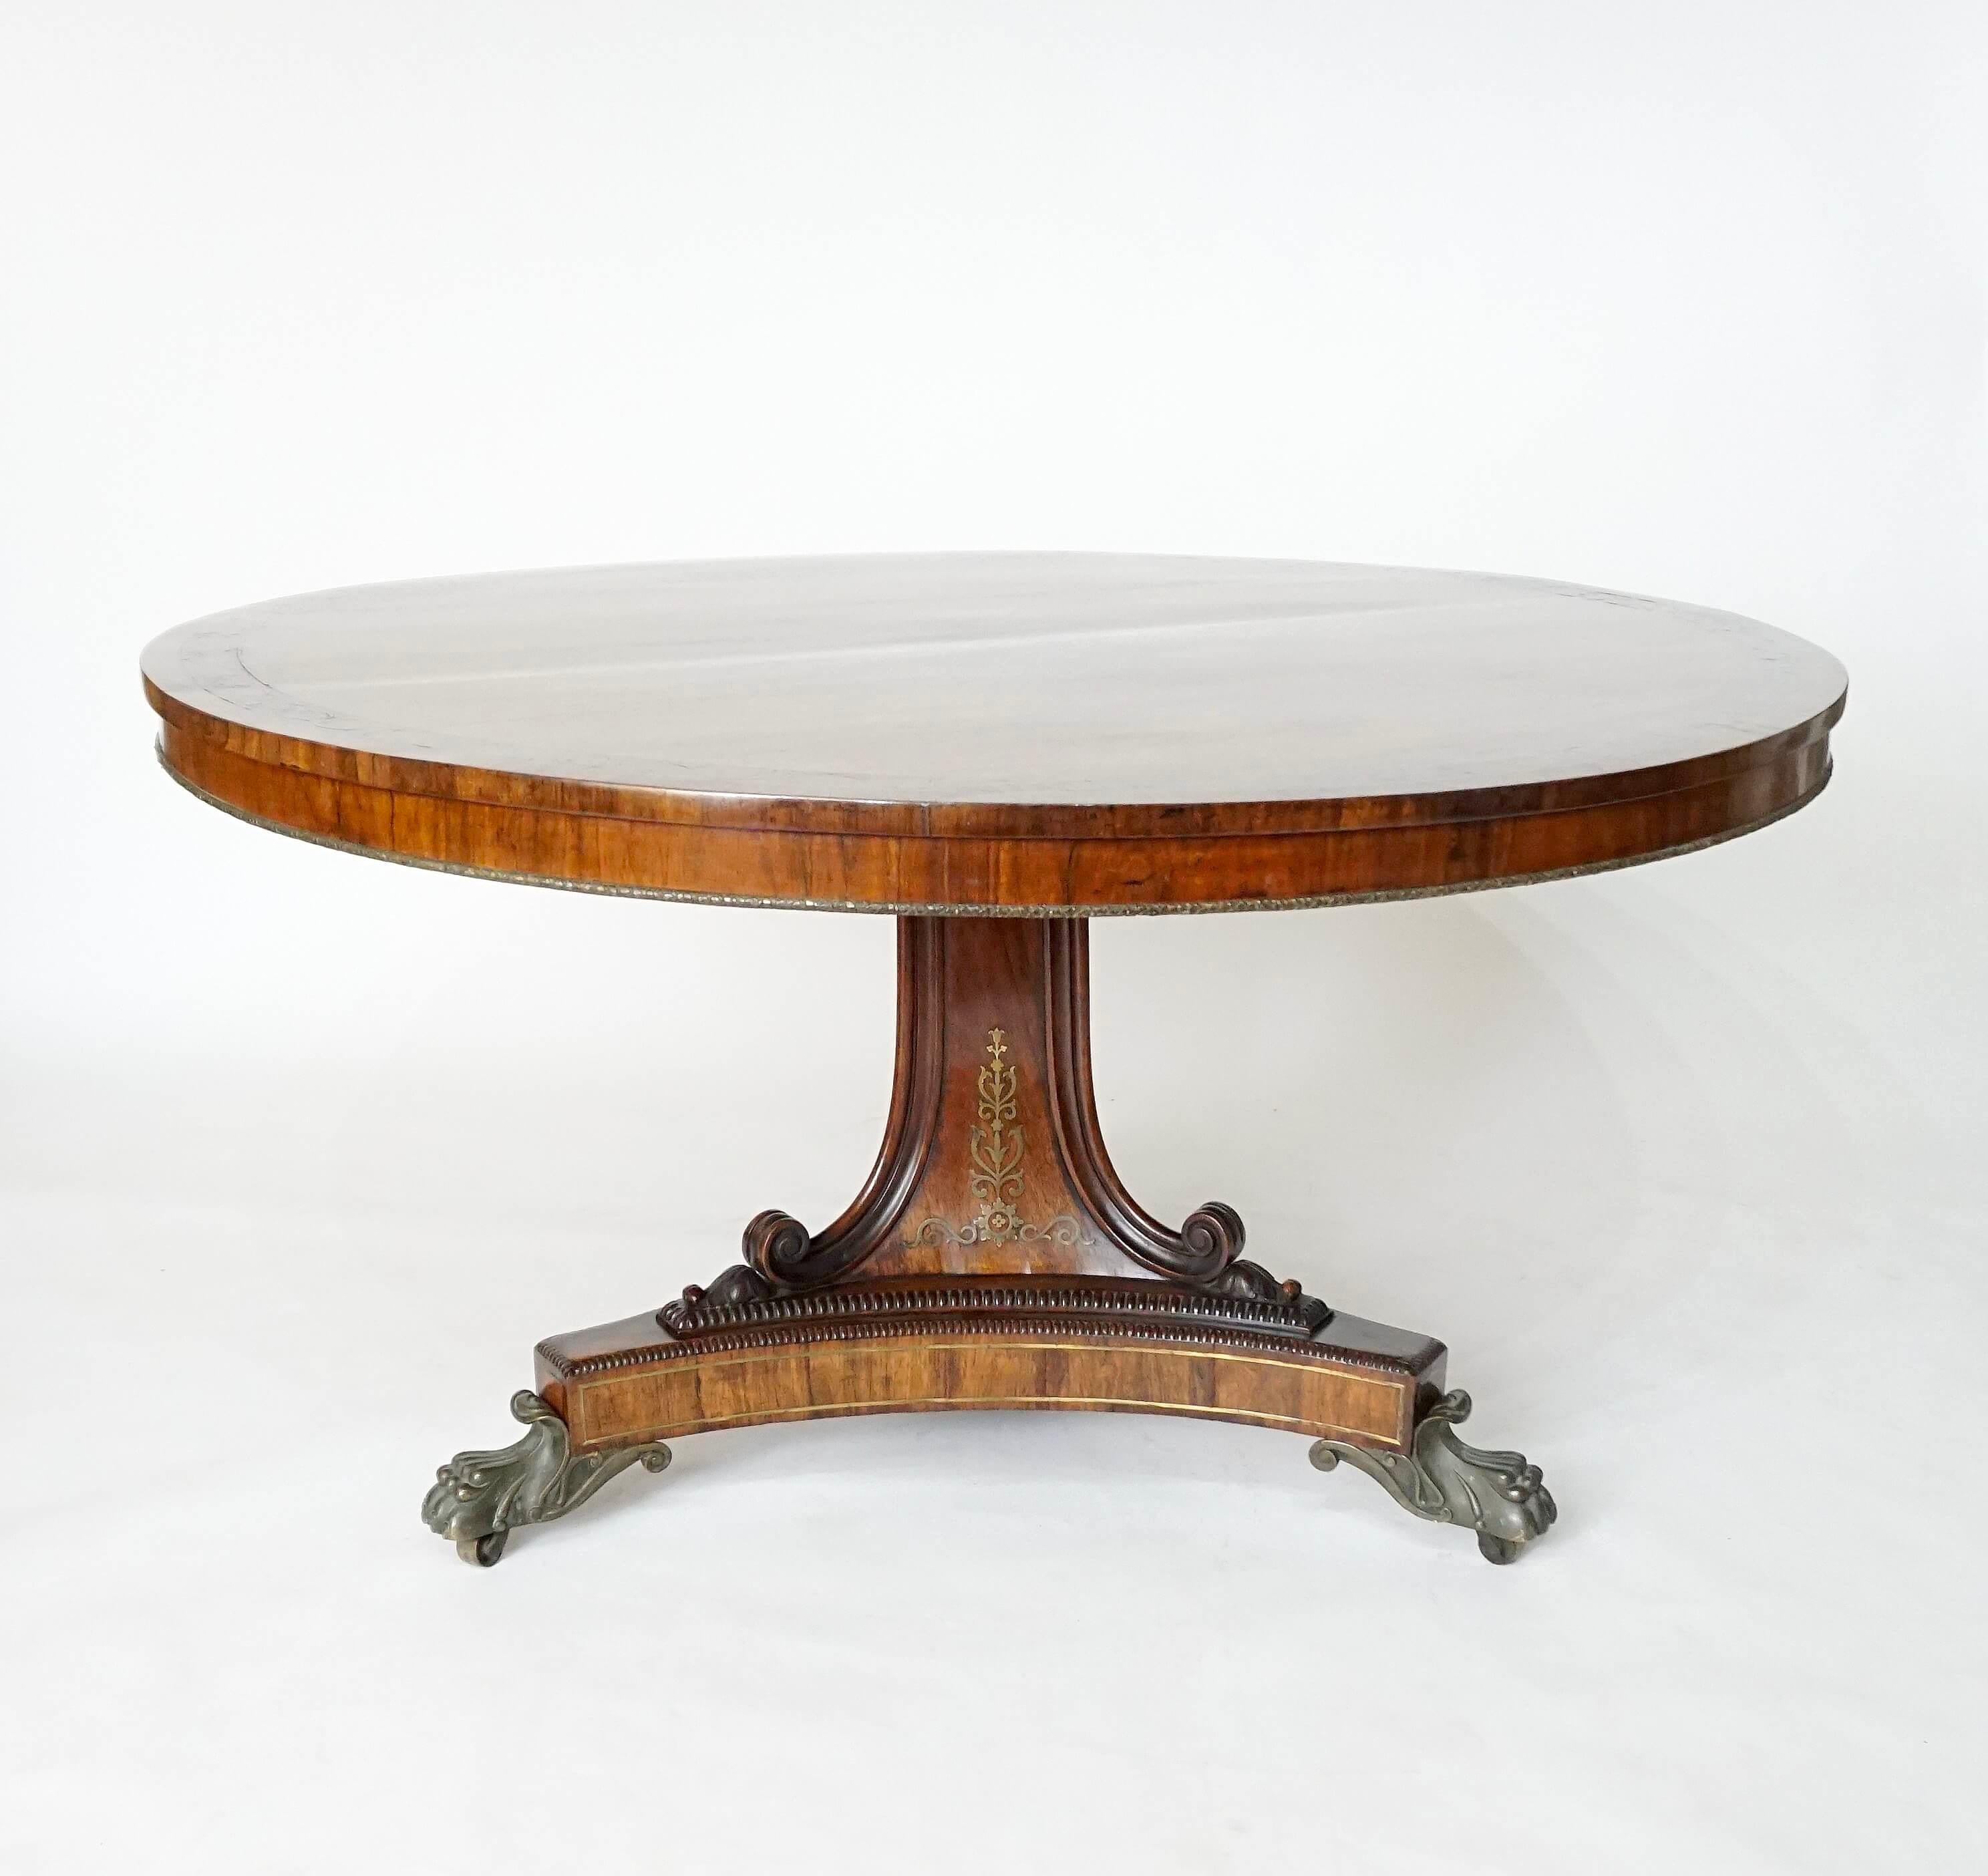 Elégante table centrale en acajou plaqué de bois de rose, datant de la Régence anglaise, vers 1820 ; le plateau basculant avec une bordure en laiton incrustée de rinceaux feuillus, avec un bord inférieur en laiton moulé entouré d'une guirlande